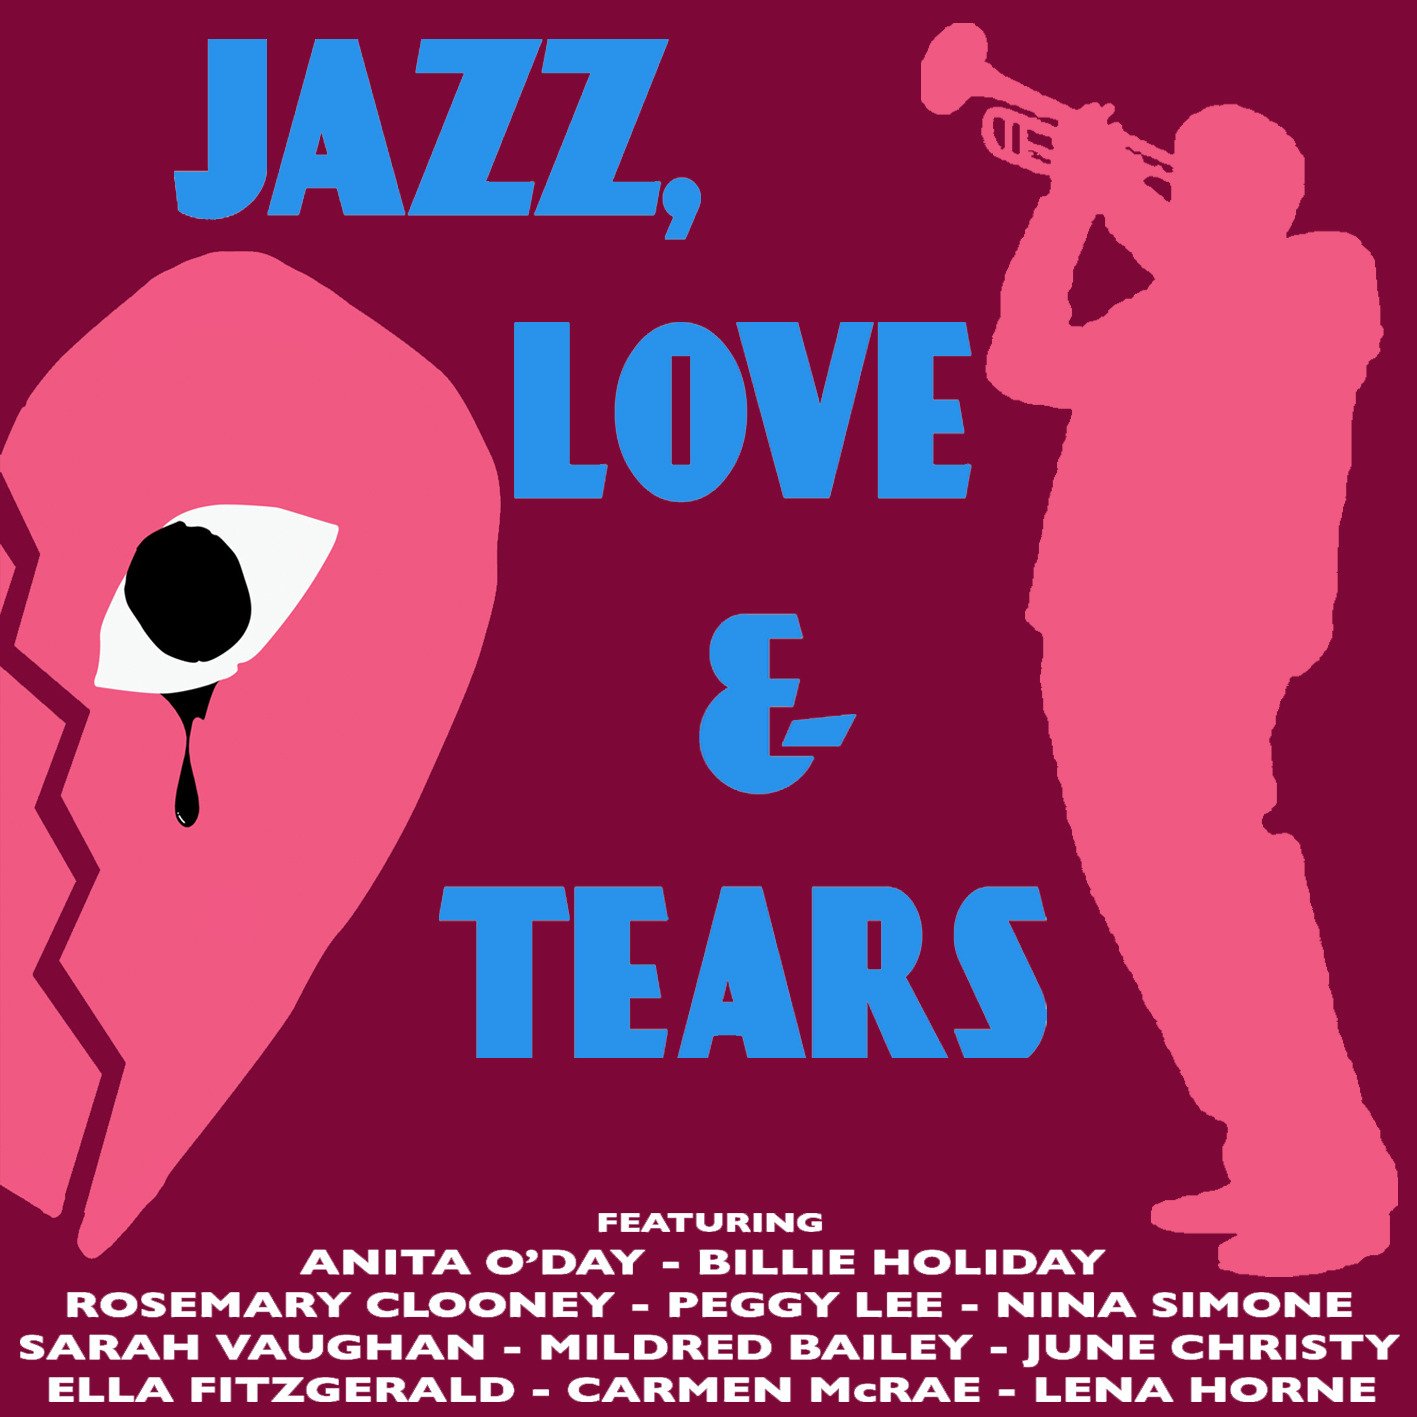 Джаз любимая текст. Jazz Love. Love and tears. Nina Simone Billie Holiday картинки. I Love Jazz.